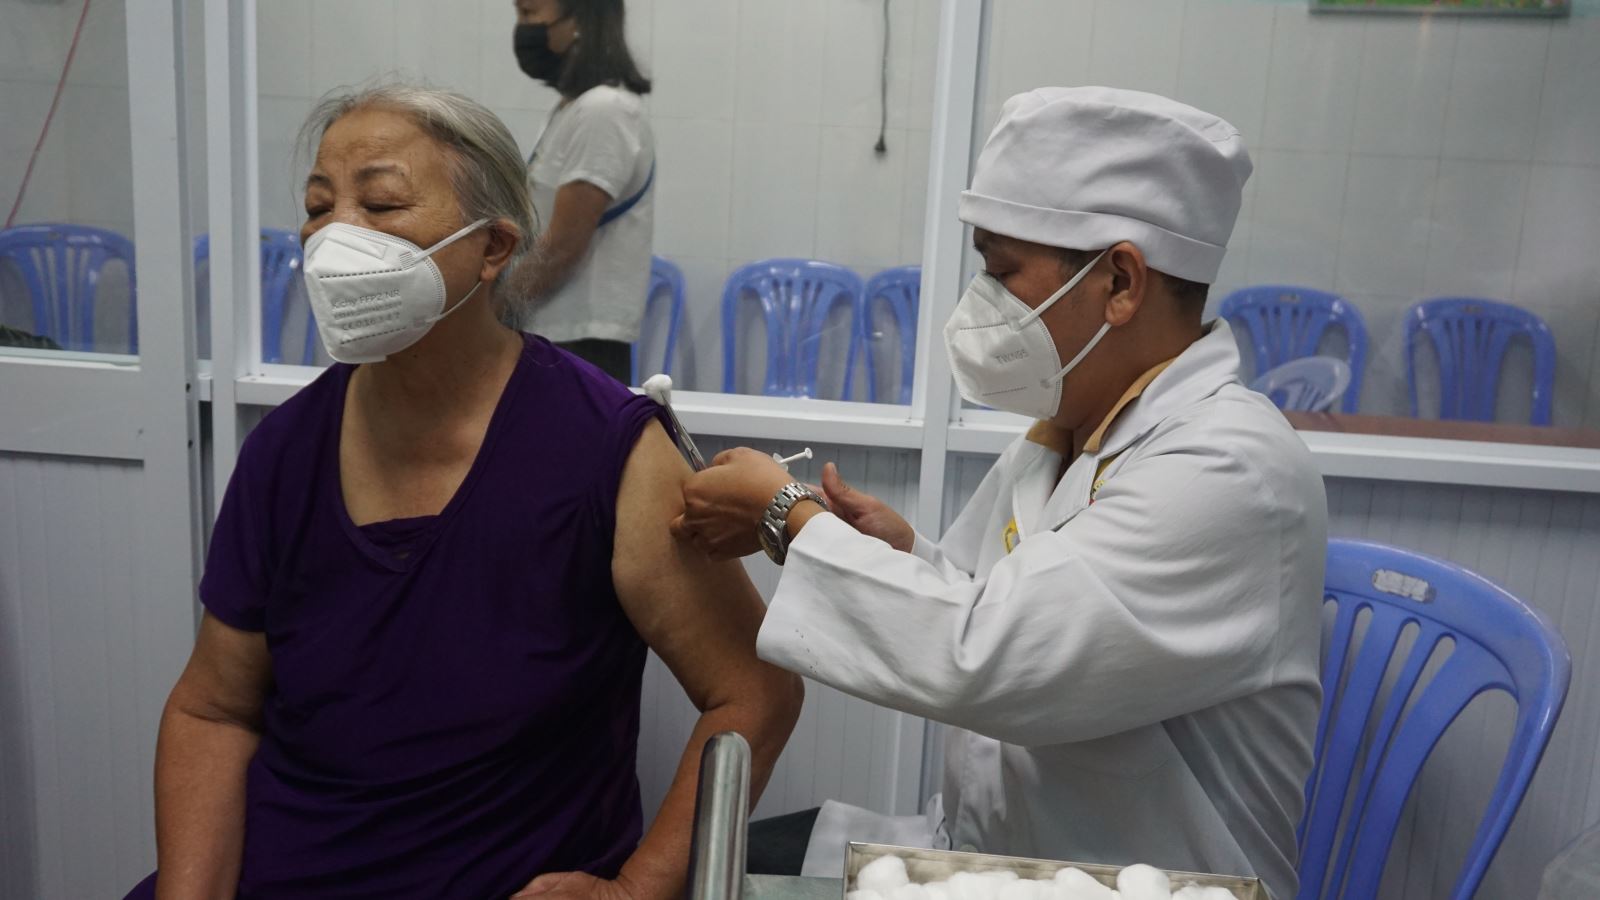 TP Hồ Chí Minh đang rà soát, lập danh sách những người thuộc nhóm nguy cơ nhưng chưa tiêm đủ vaccine COVID-19.